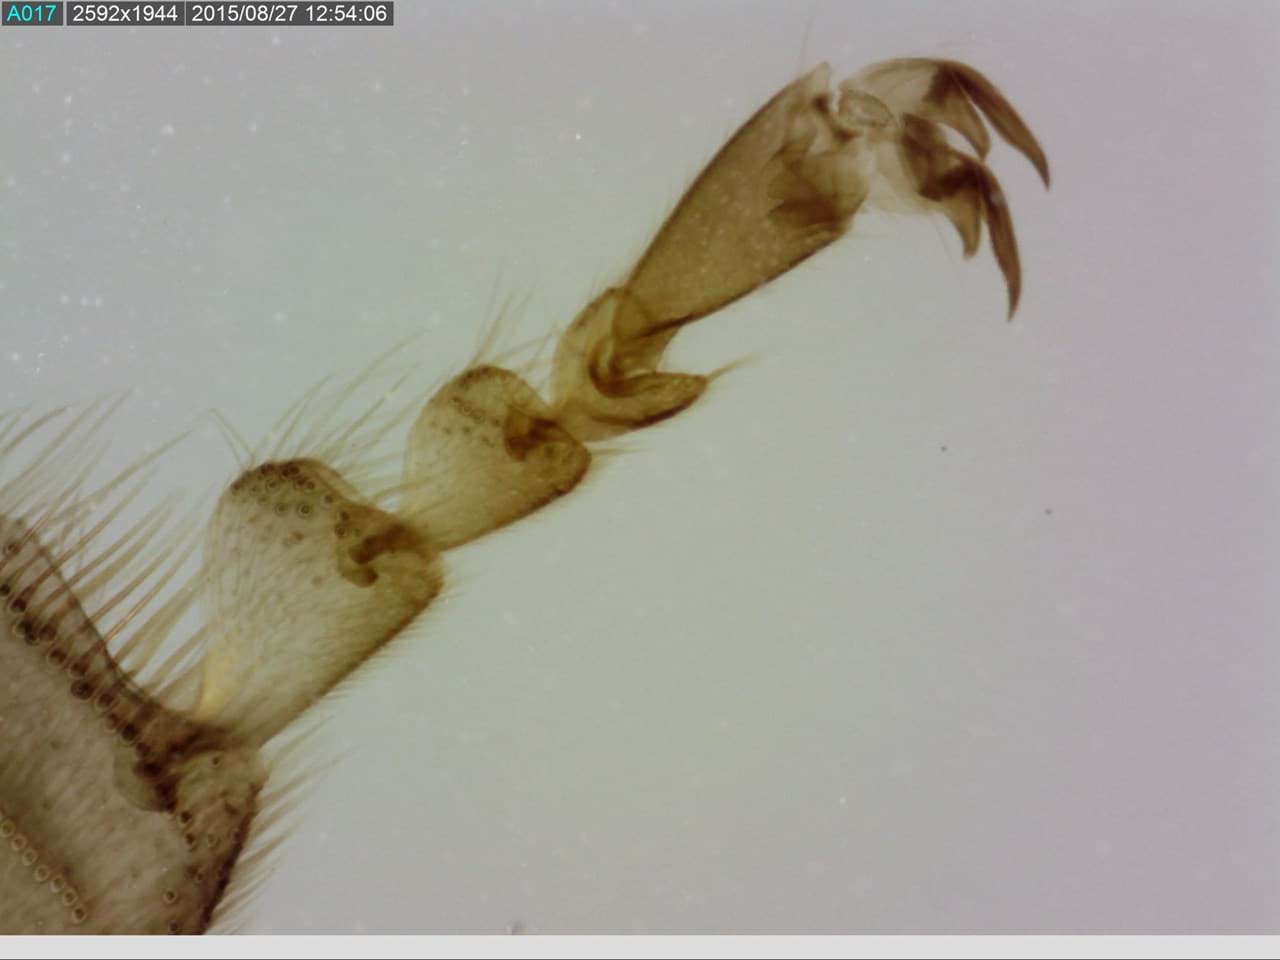 Bein eines Insekts unter dem Mikroskop. Ein Beispiel von dem was man mit einem Dino-Lite Mikroskop machen kann.